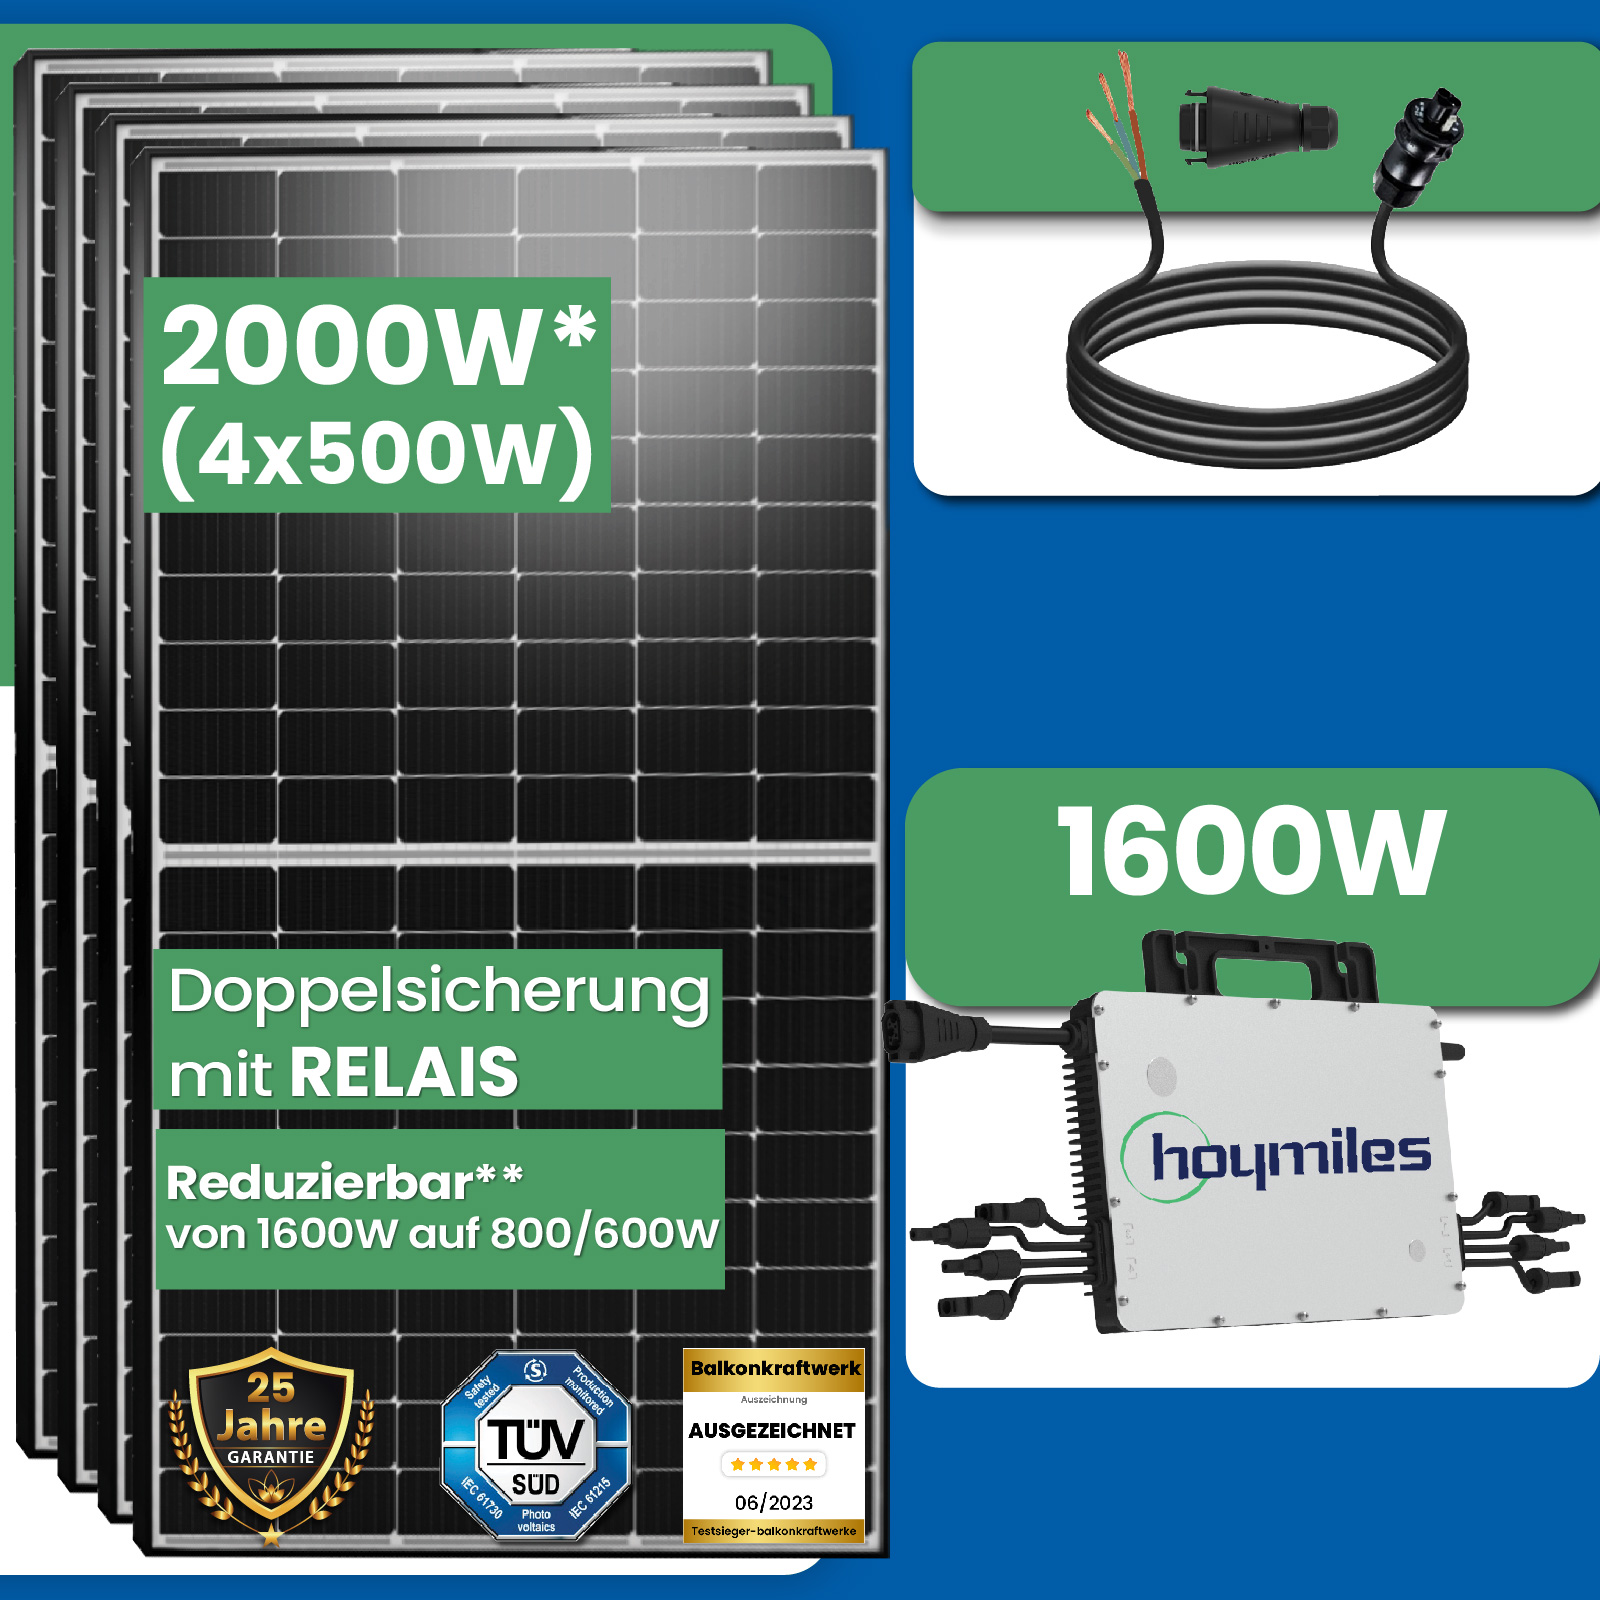 2000W Photovoltaik Balkonkraftwerk mit EPP 500W Solarmodule, Hoymiles  HMS-1600-4T Wechselrichter und 10m Wielandstecker